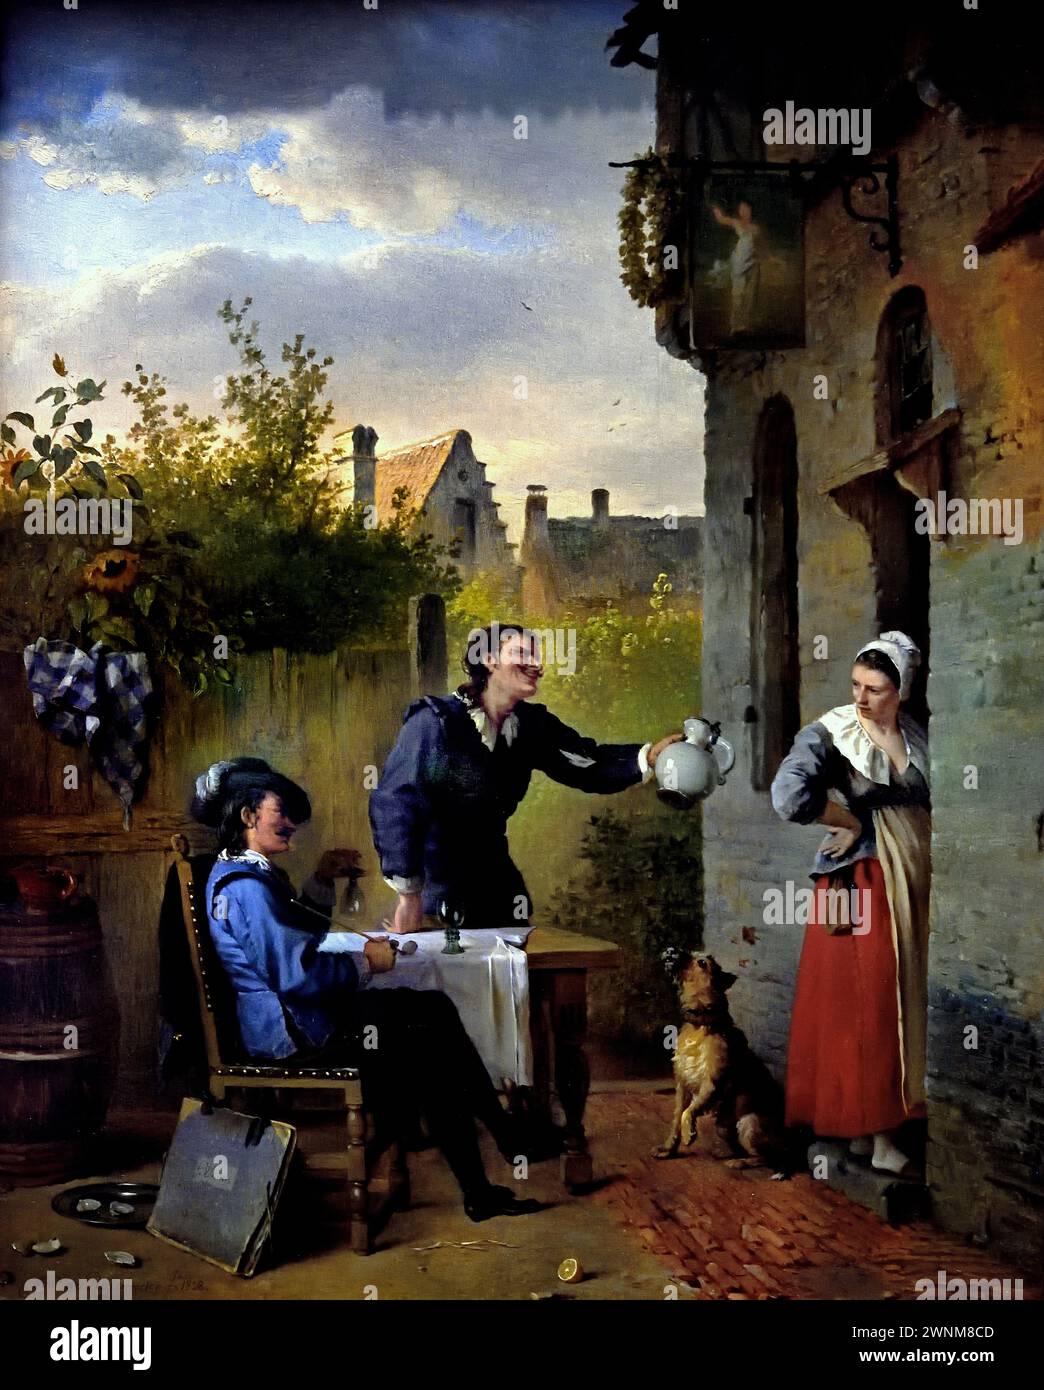 Taverne scène 1828 par Ignatius Josephus Van Regemorter 1785-1873 Musée Royal des Beaux-Arts, Anvers, Belgique, Belgique. Banque D'Images